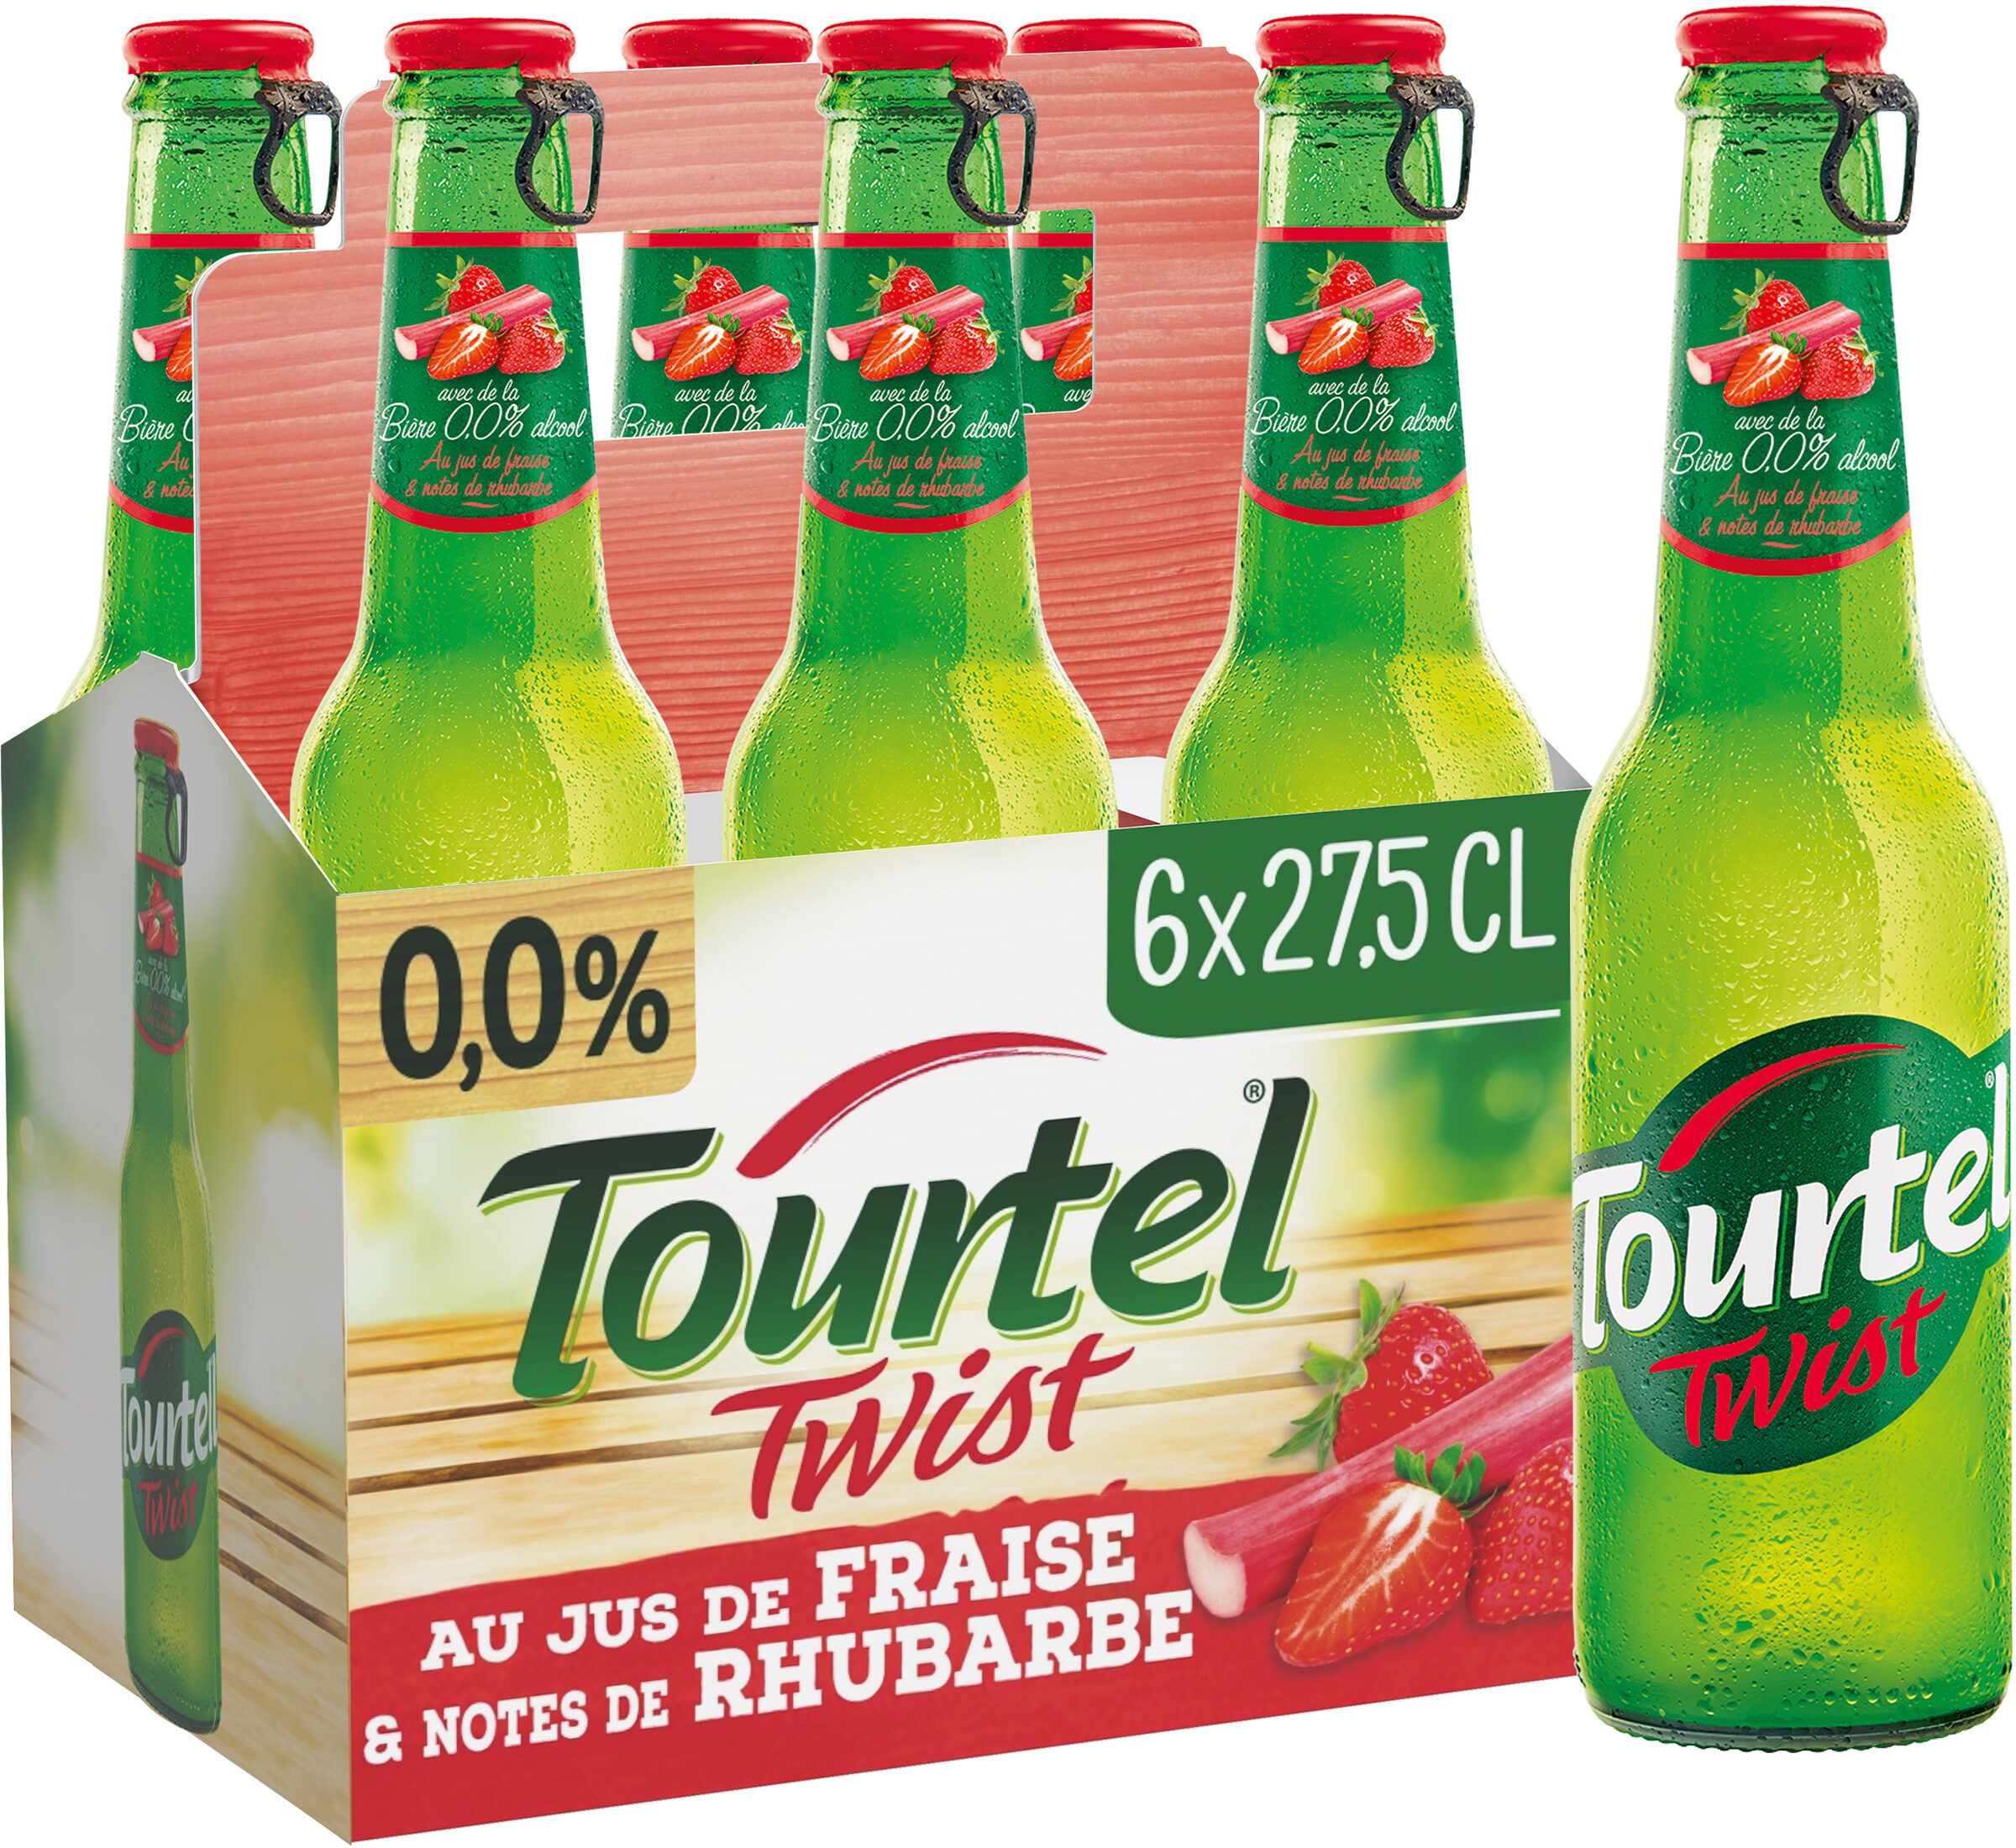 Tourtel 6X27,5CL TOURTEL TWIST FRAISE RHUBA 0.0 DEGRE ALCOOL - Producto - fr